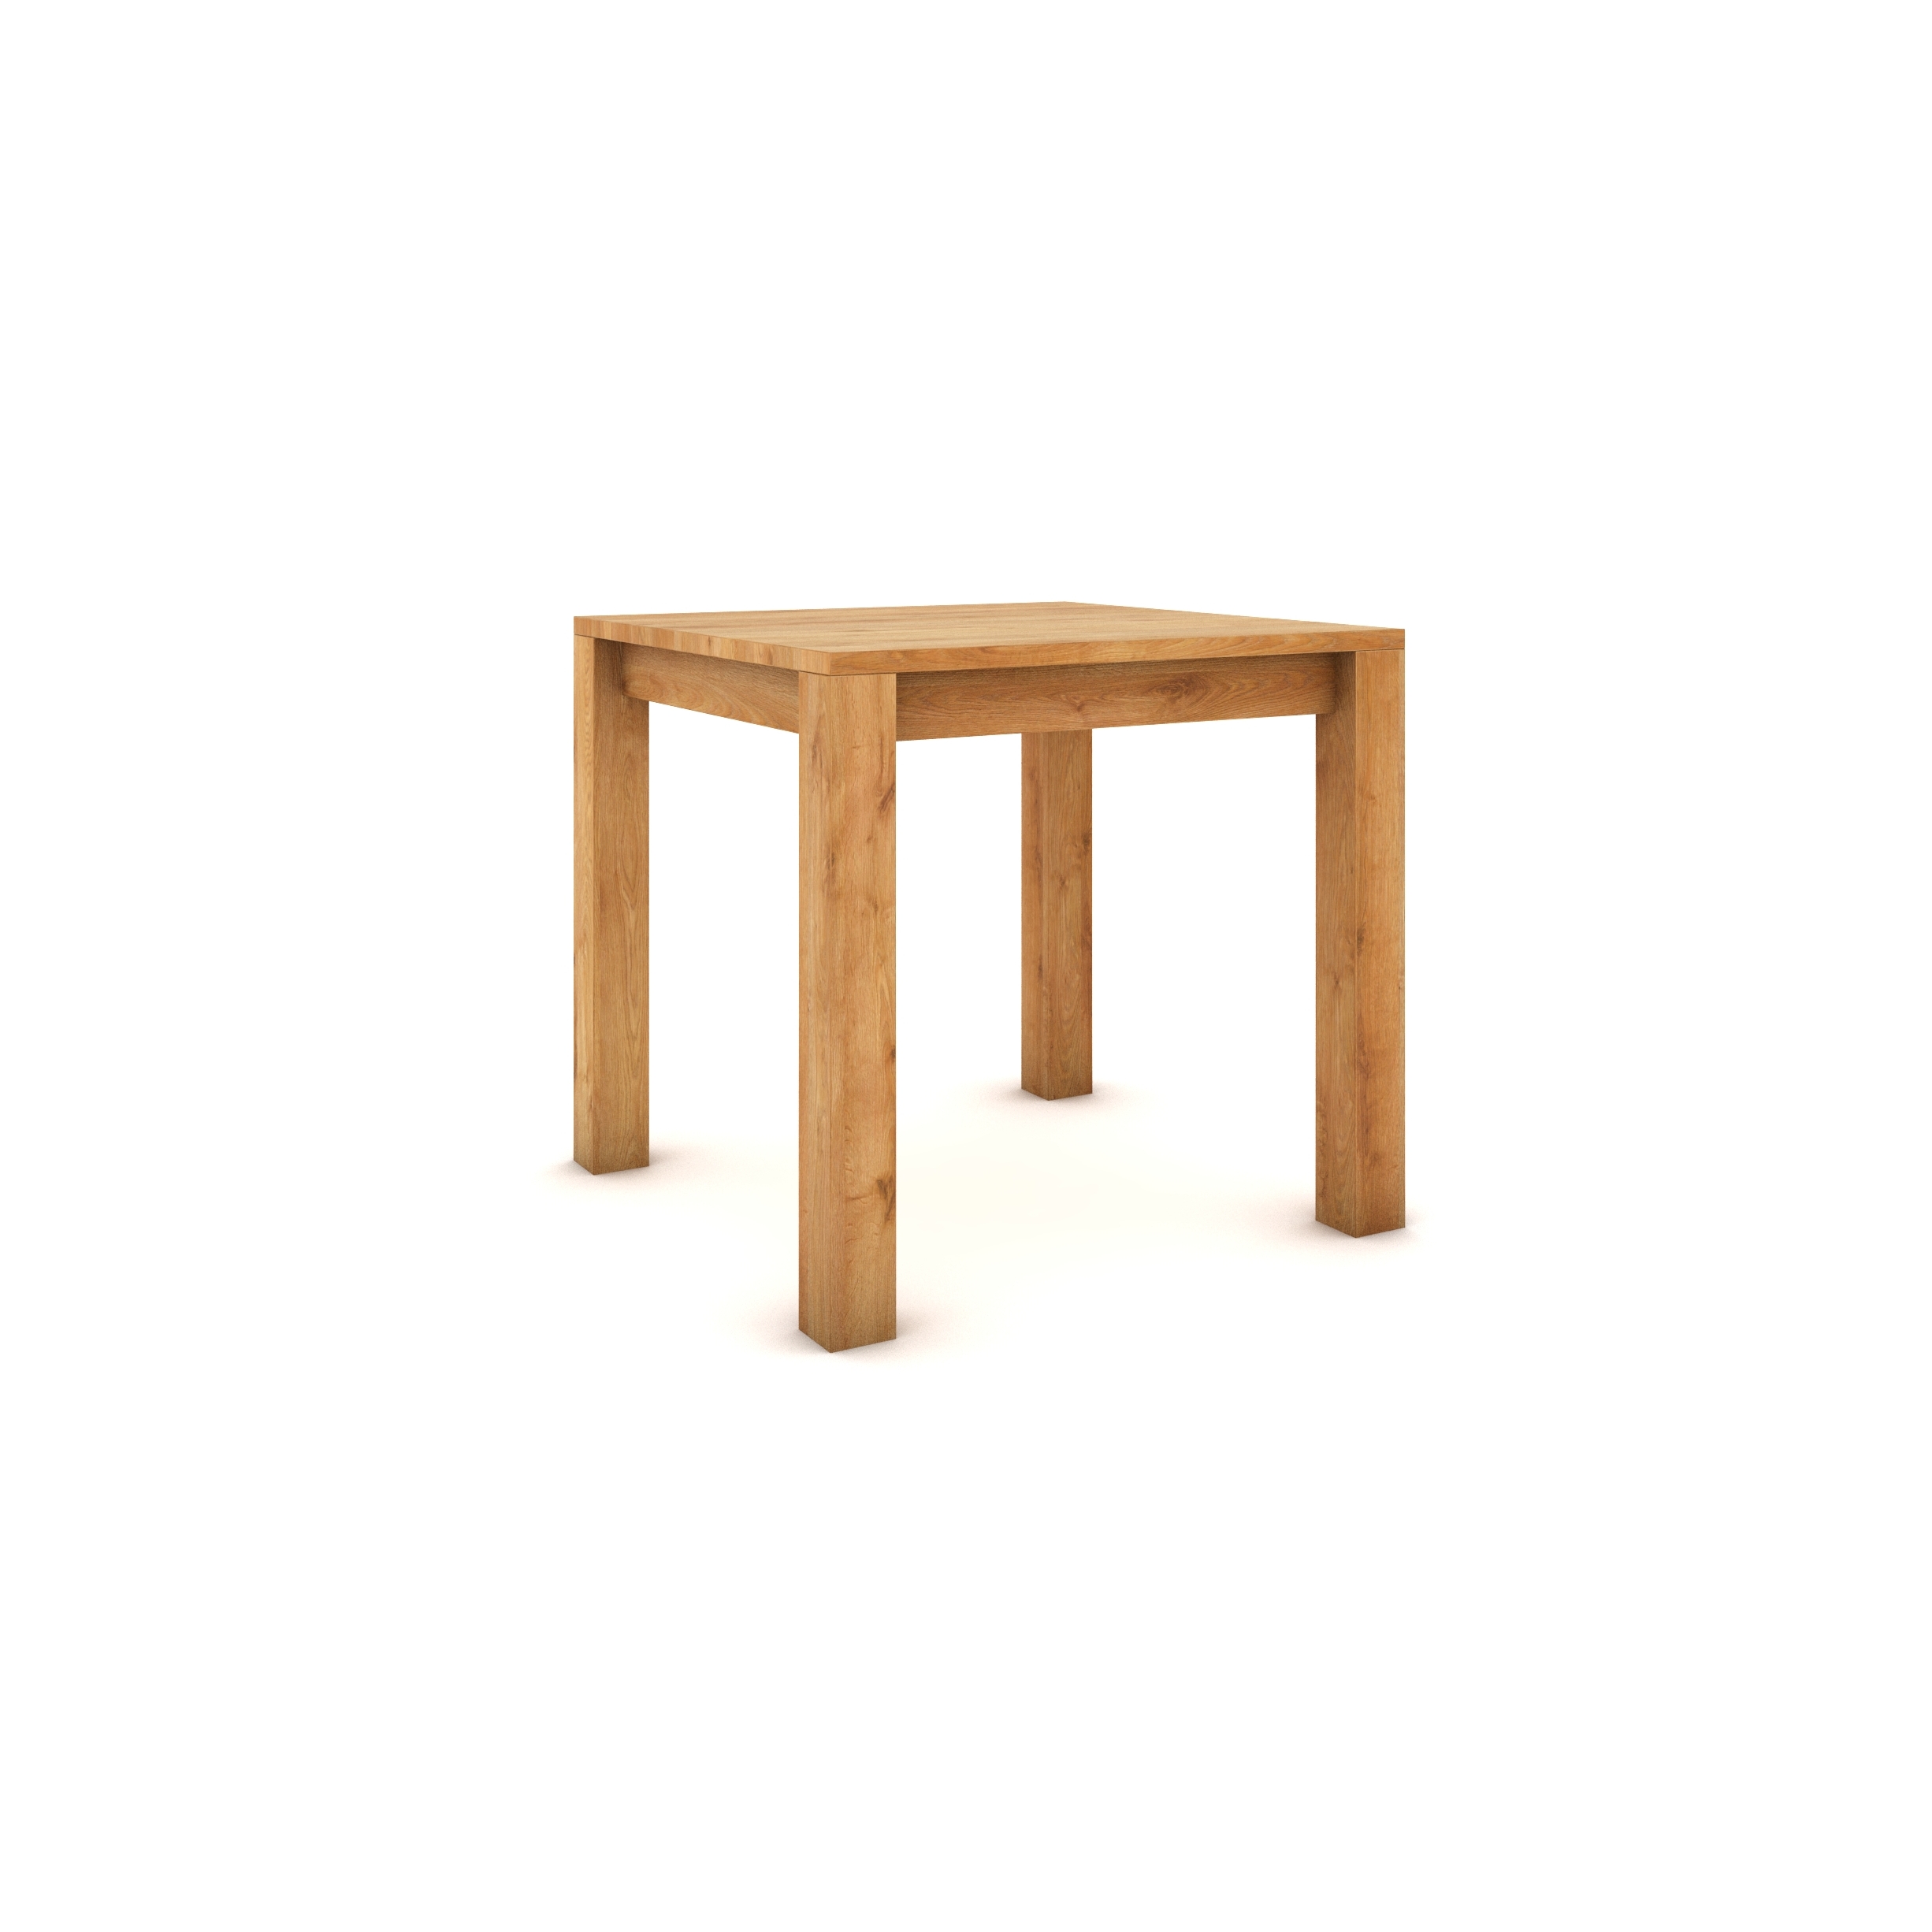 Dubový stůl 80 x 80 cm, přírodní, hedvábně polomatný